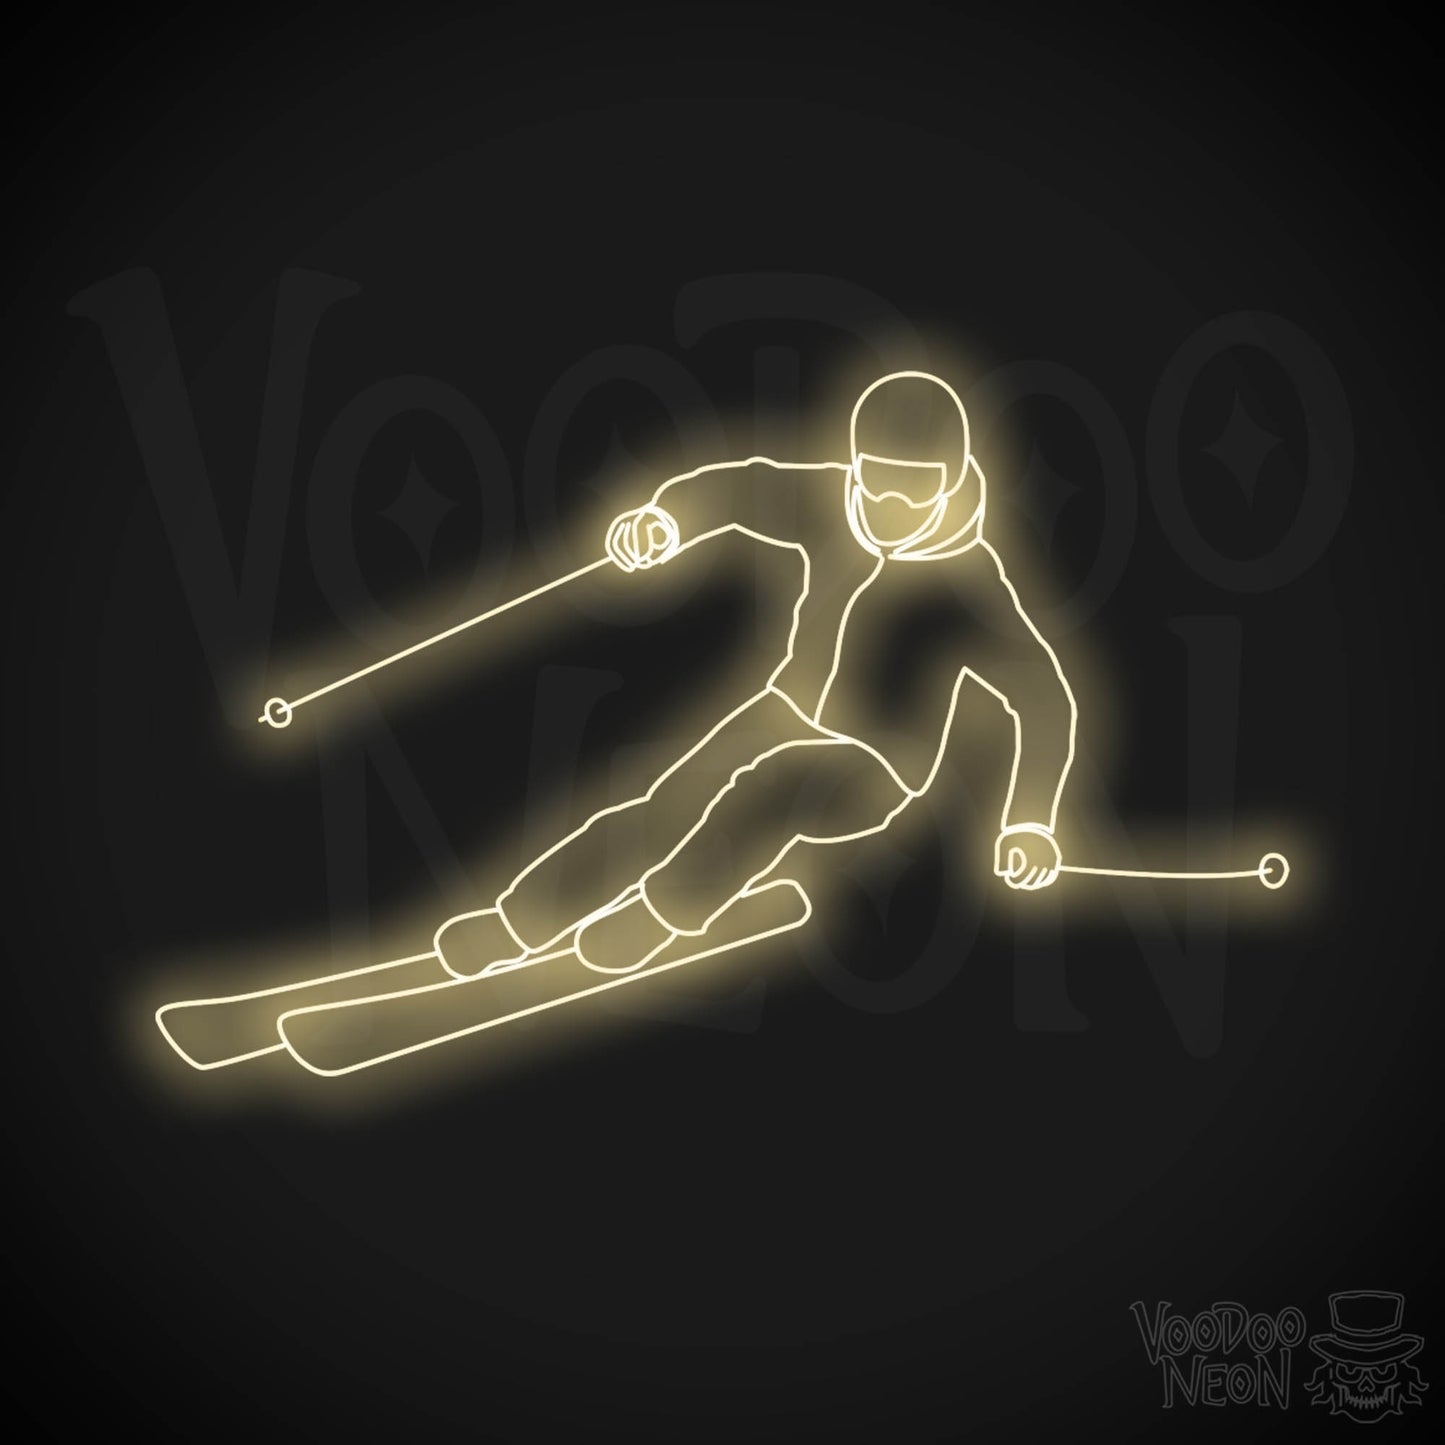 Skiing LED Neon - Warm White